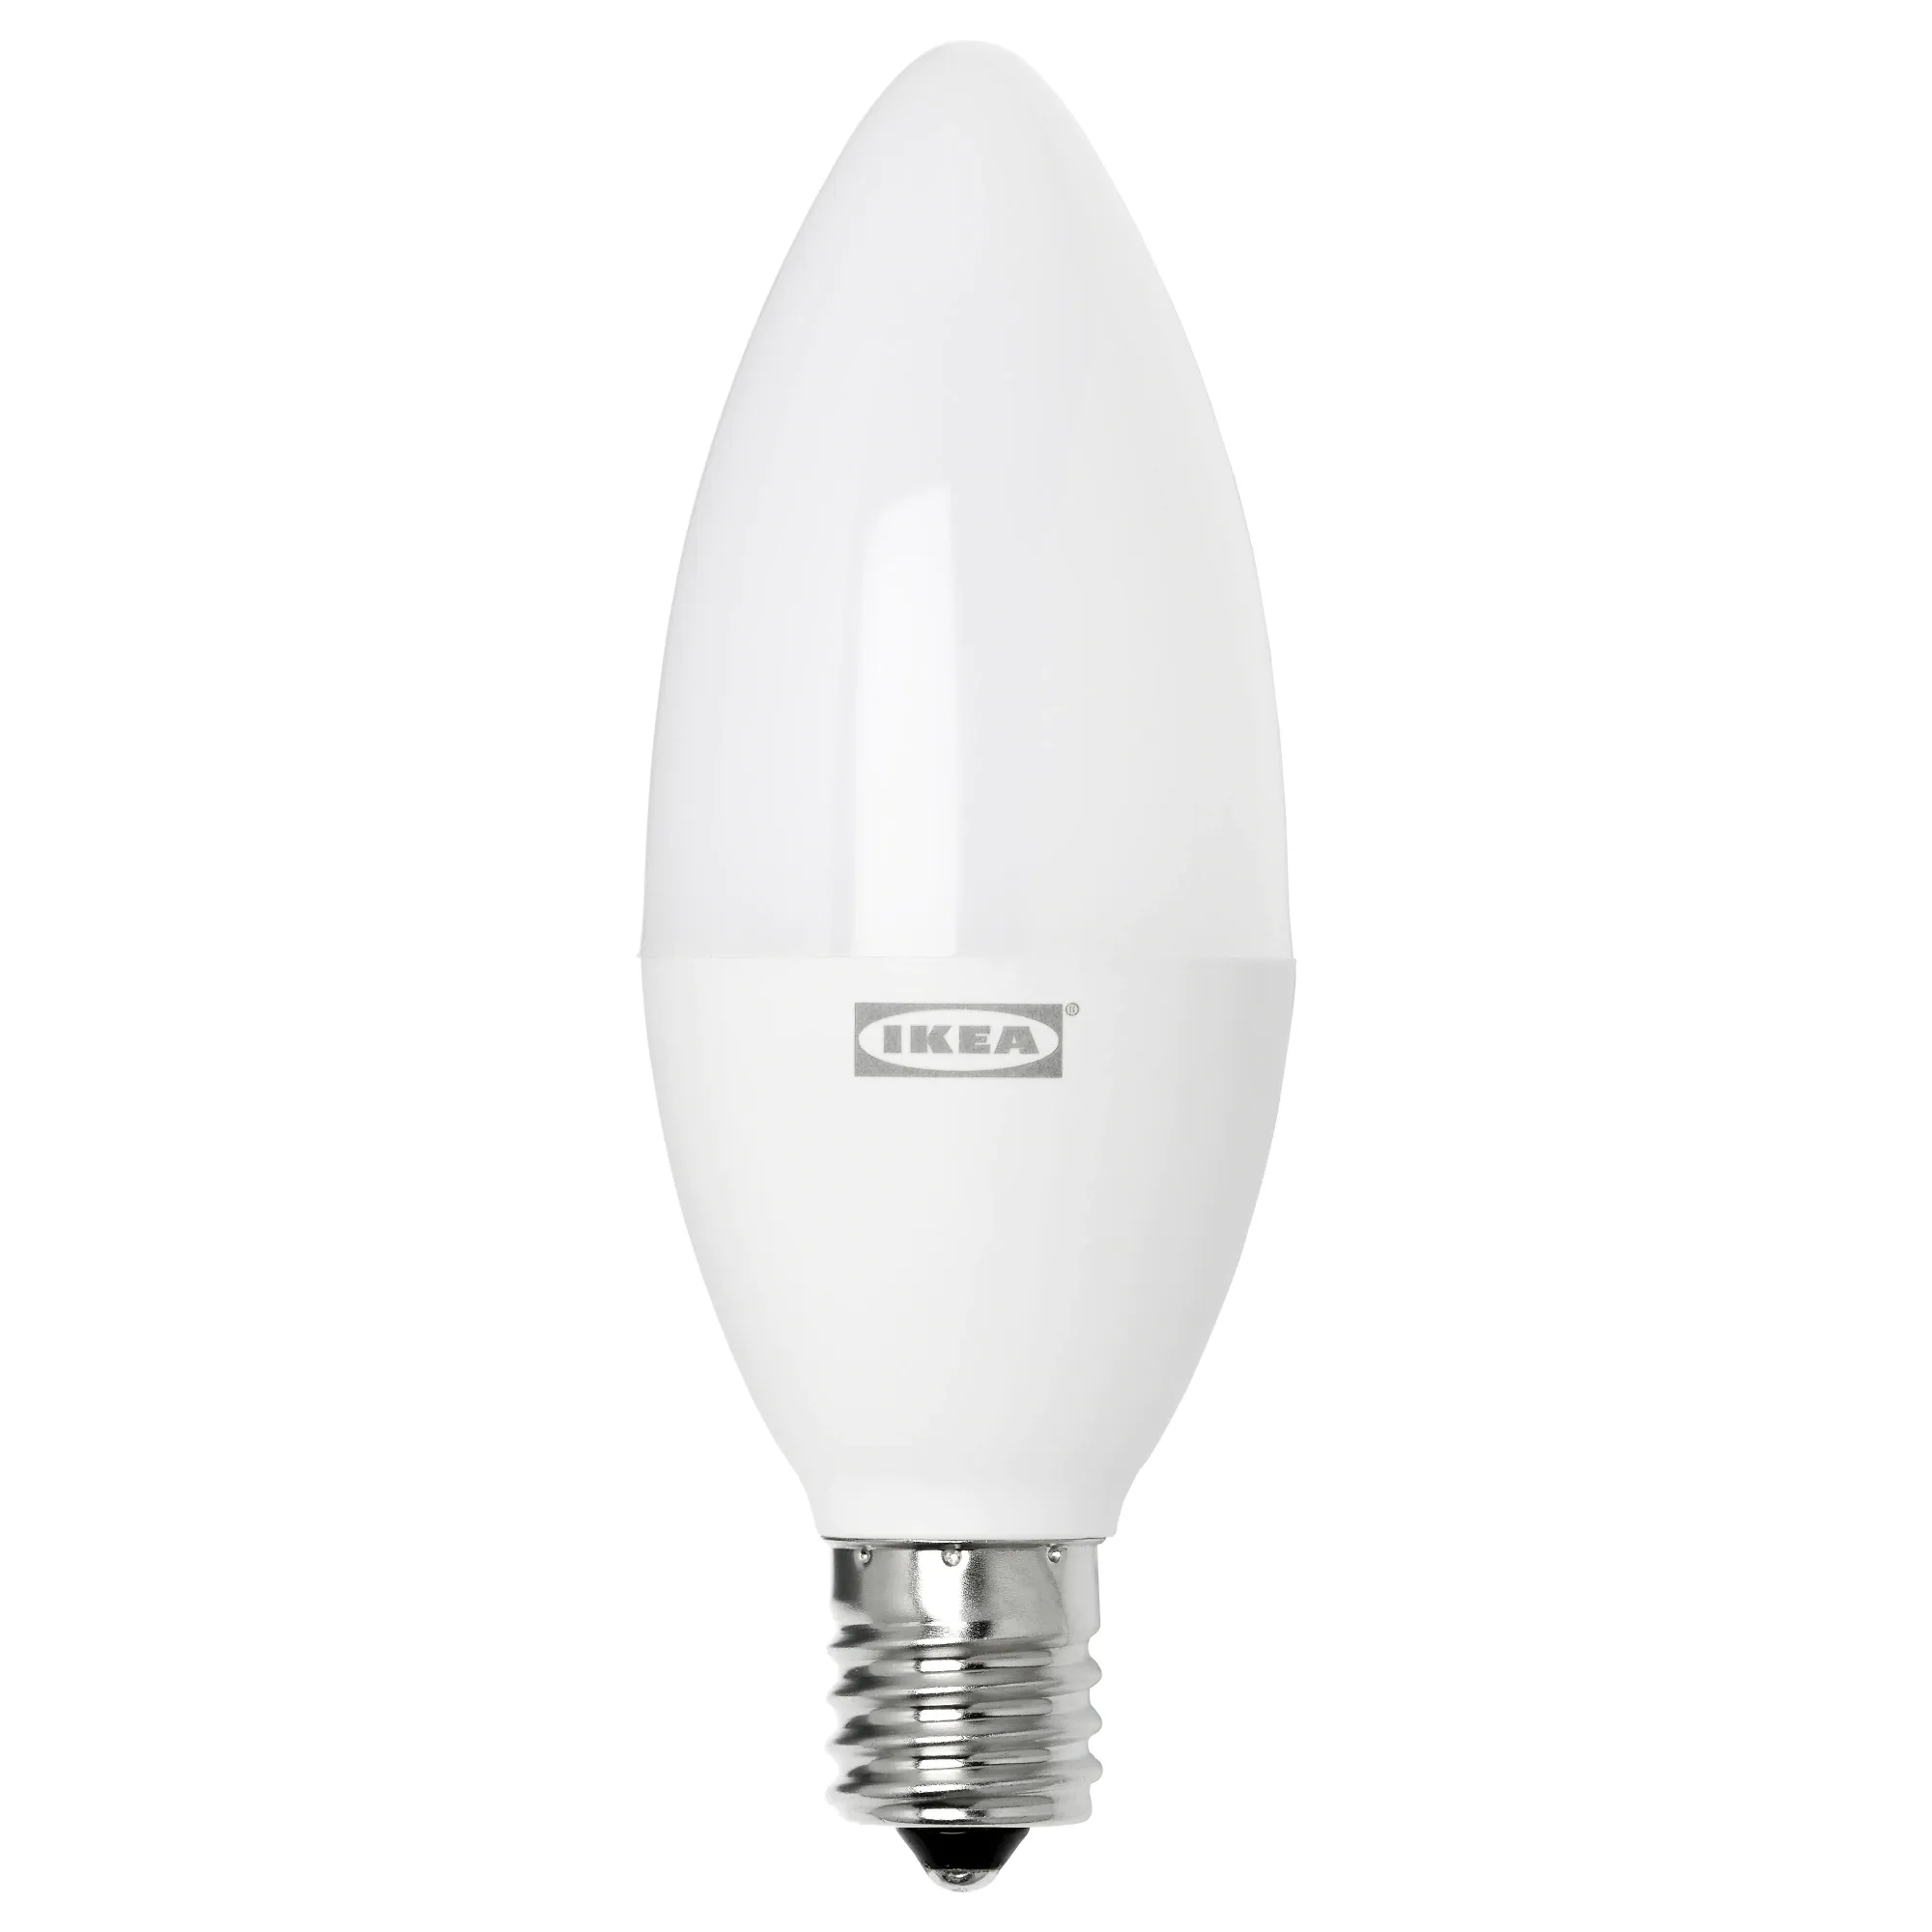 Tradfri LED bulb E17 400 lumen, wireless dimmable warm white, chandelier opal